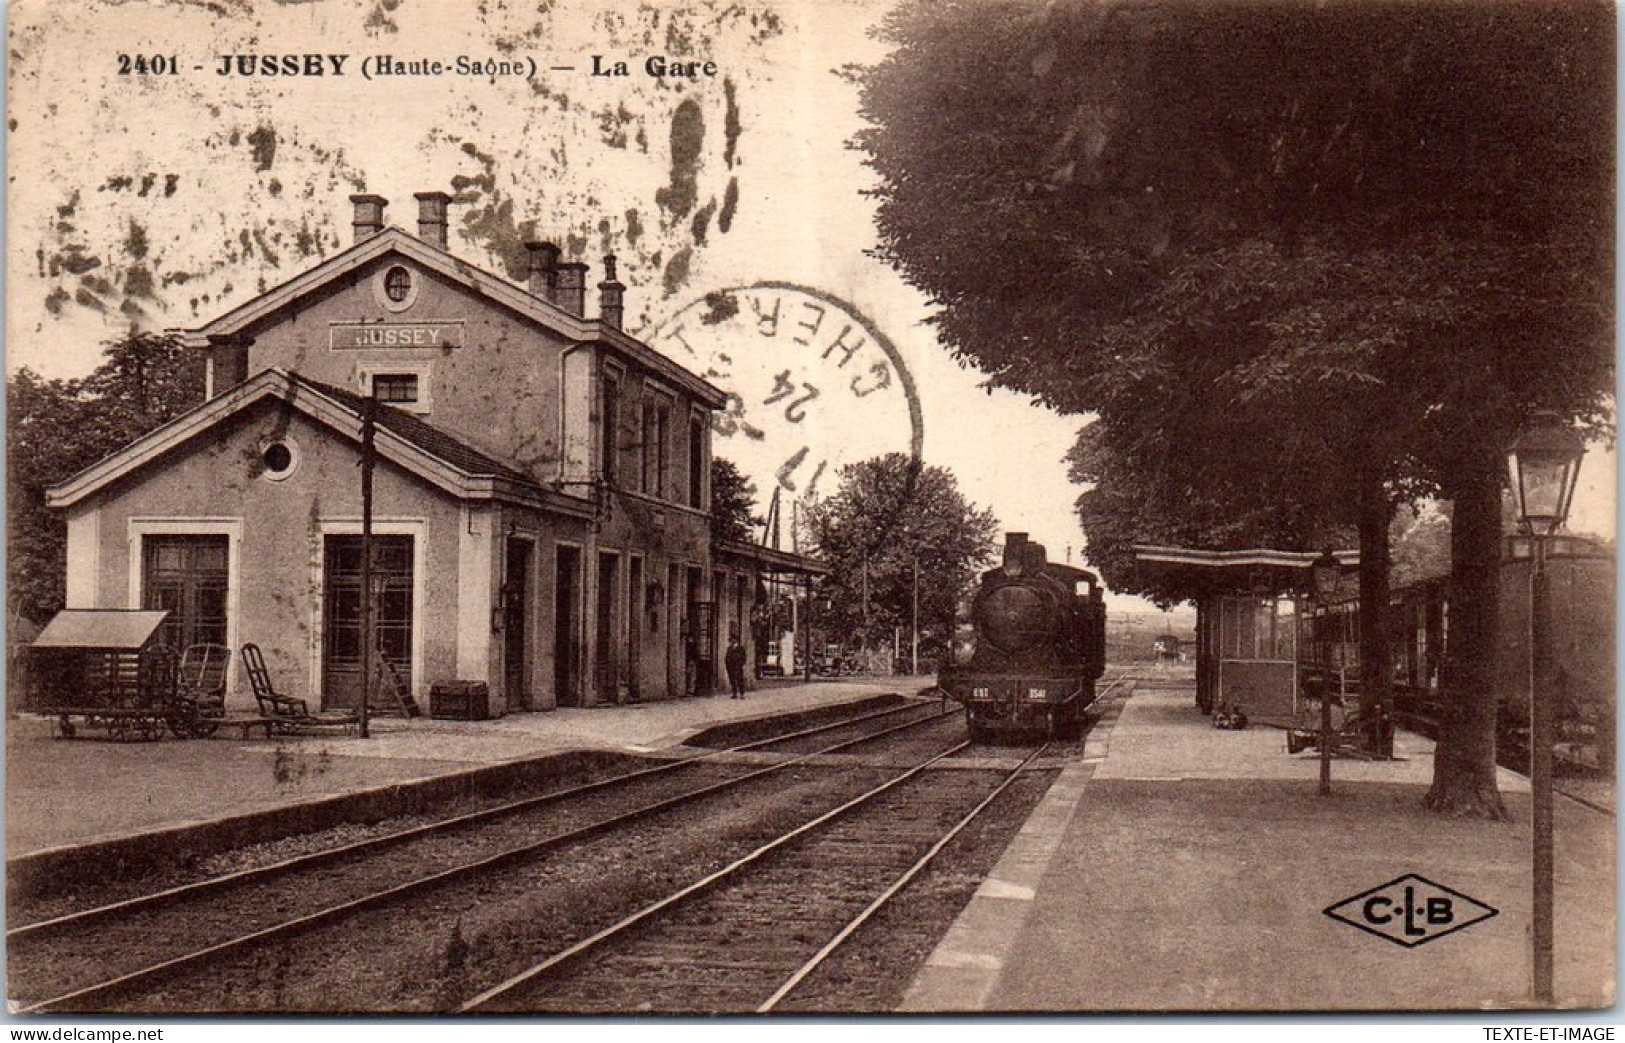 70 JUSSEY - La Gare, Arrivee D'un Train. - Jussey